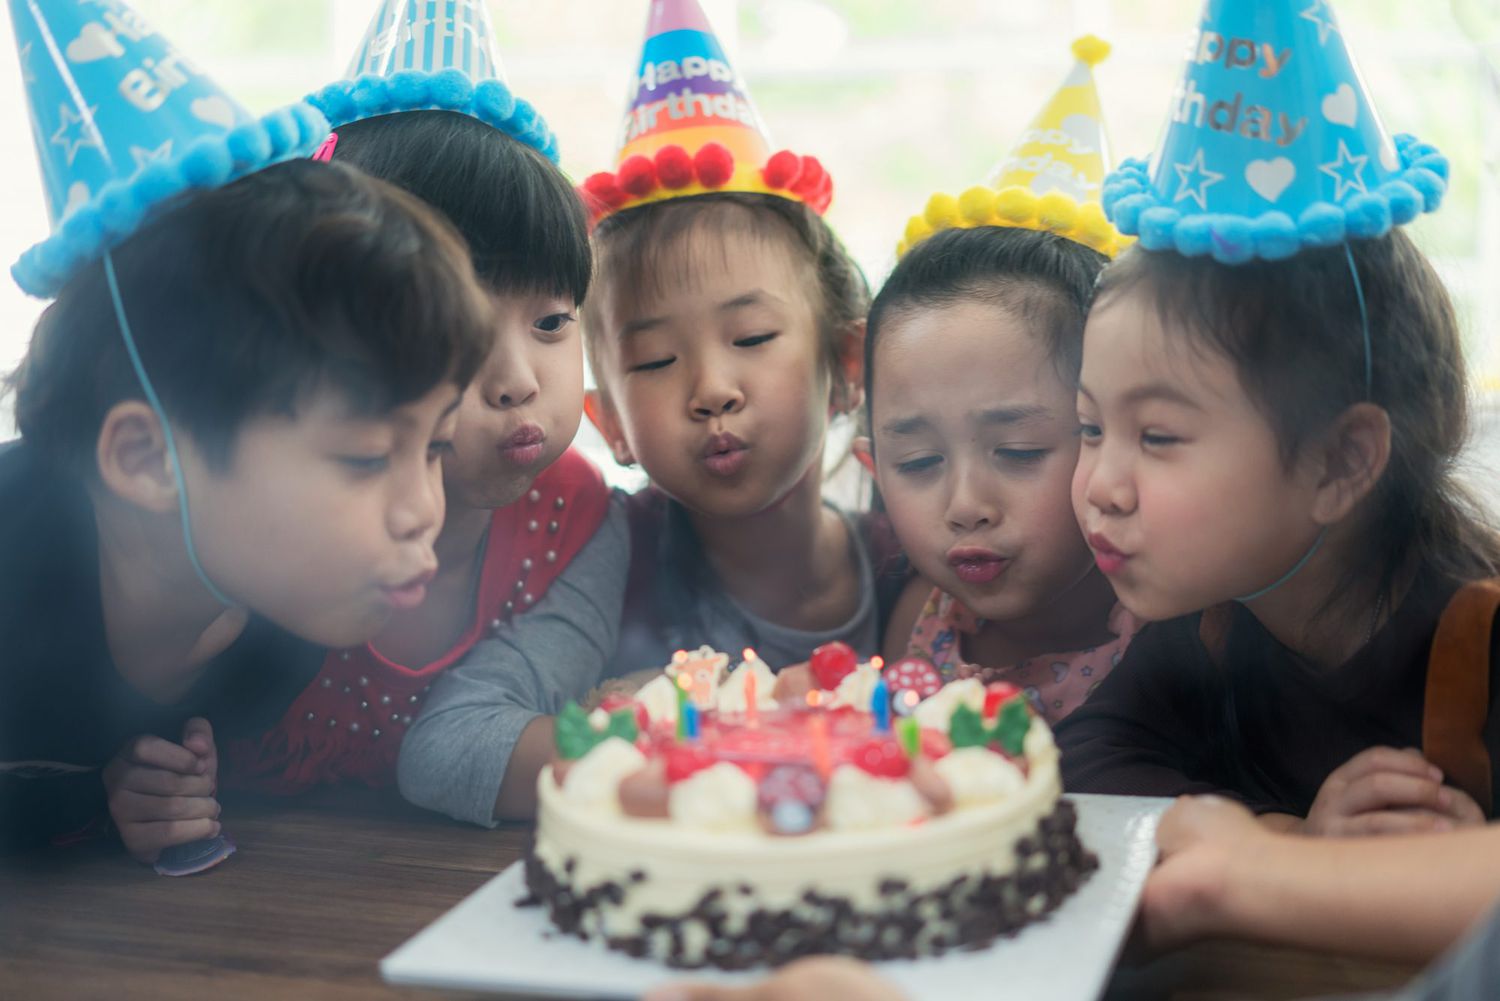 Asian Child on birthday